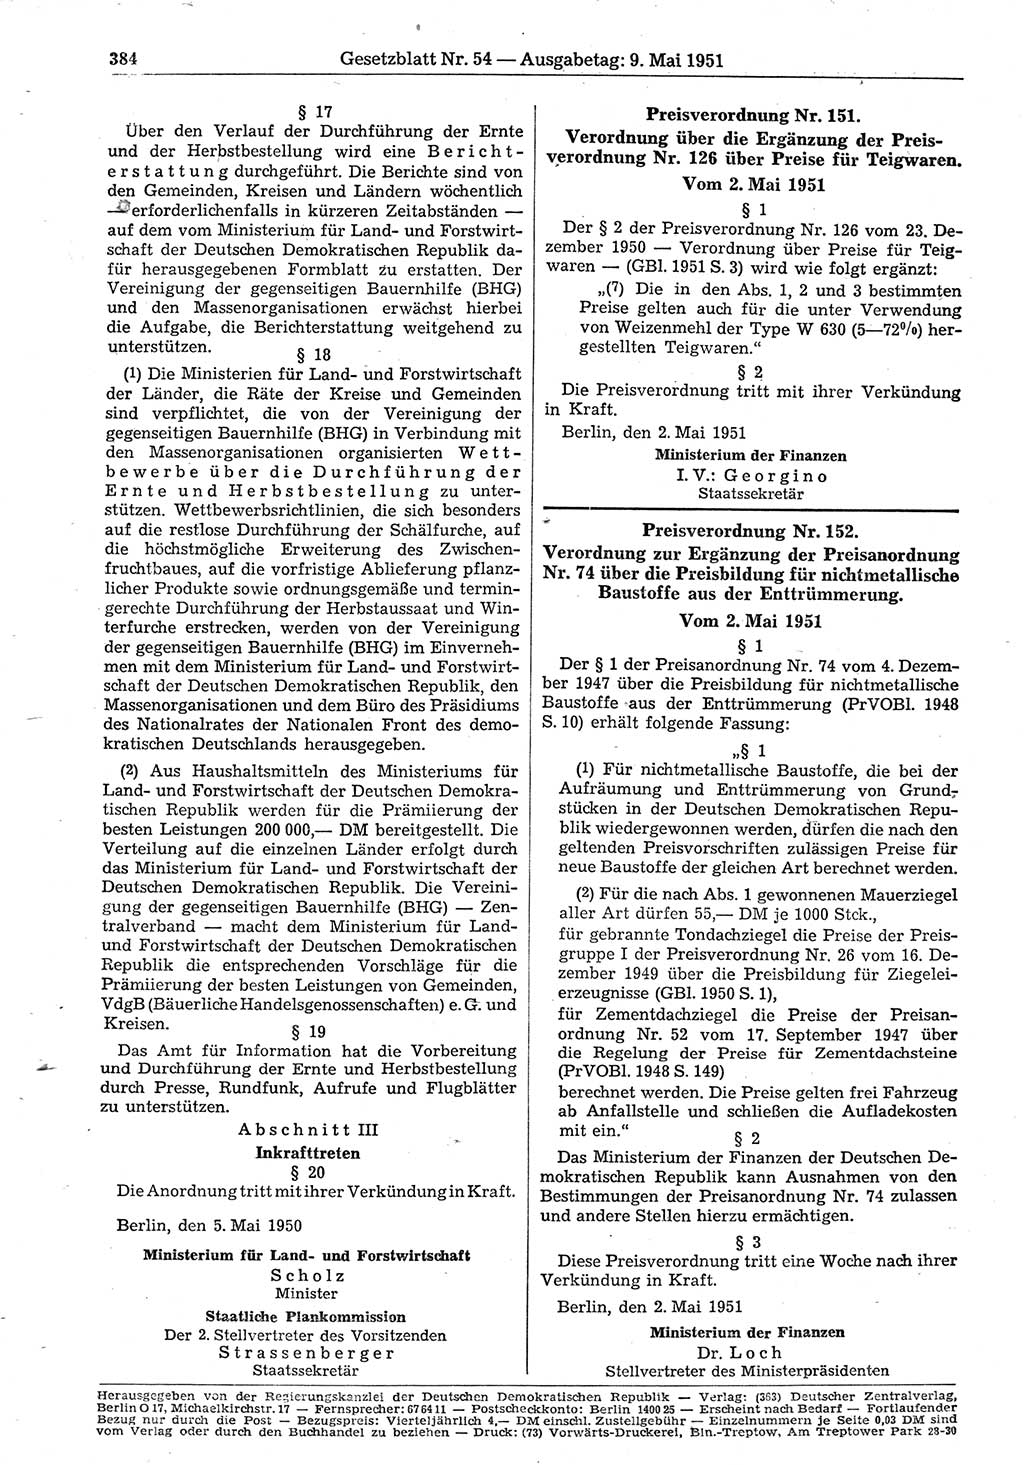 Gesetzblatt (GBl.) der Deutschen Demokratischen Republik (DDR) 1951, Seite 384 (GBl. DDR 1951, S. 384)